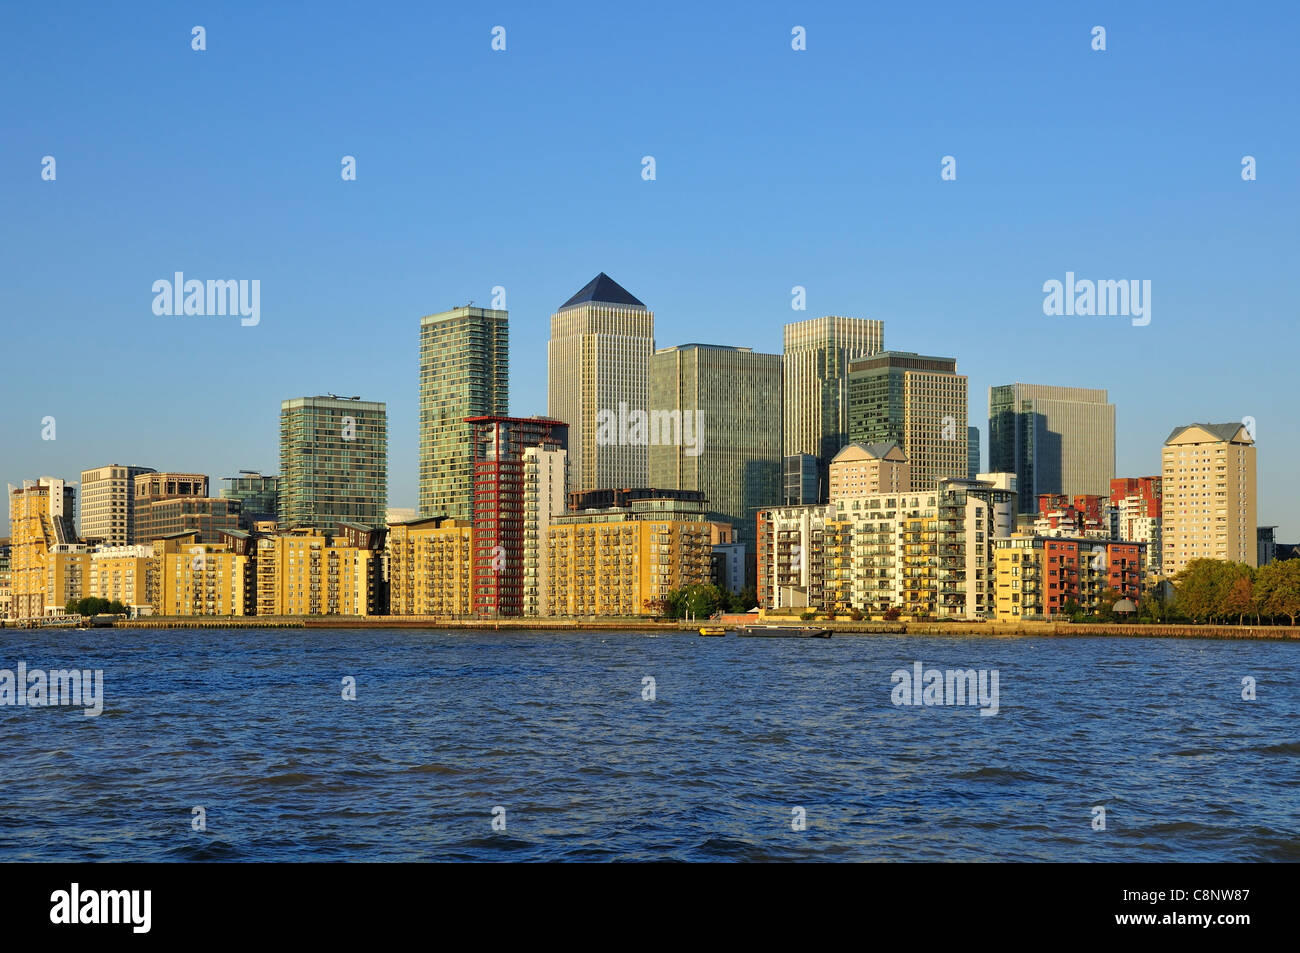 Canary Wharf, London Docklands UK, de la rive sud de la Tamise, avec un ciel bleu Banque D'Images